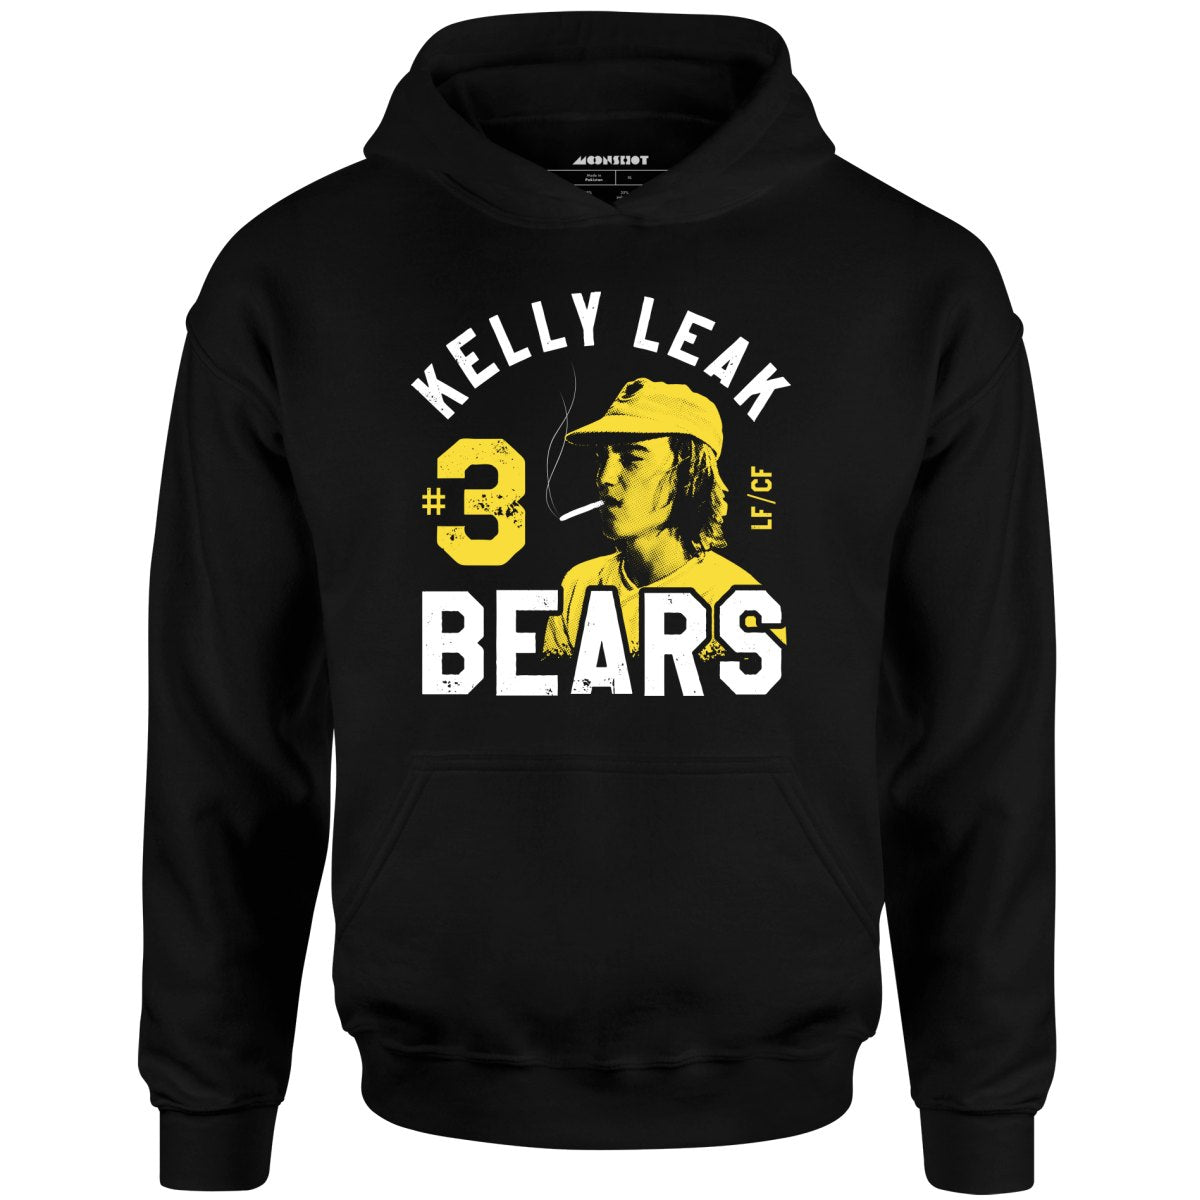 Kelly Leak #3 Bears - Unisex Hoodie